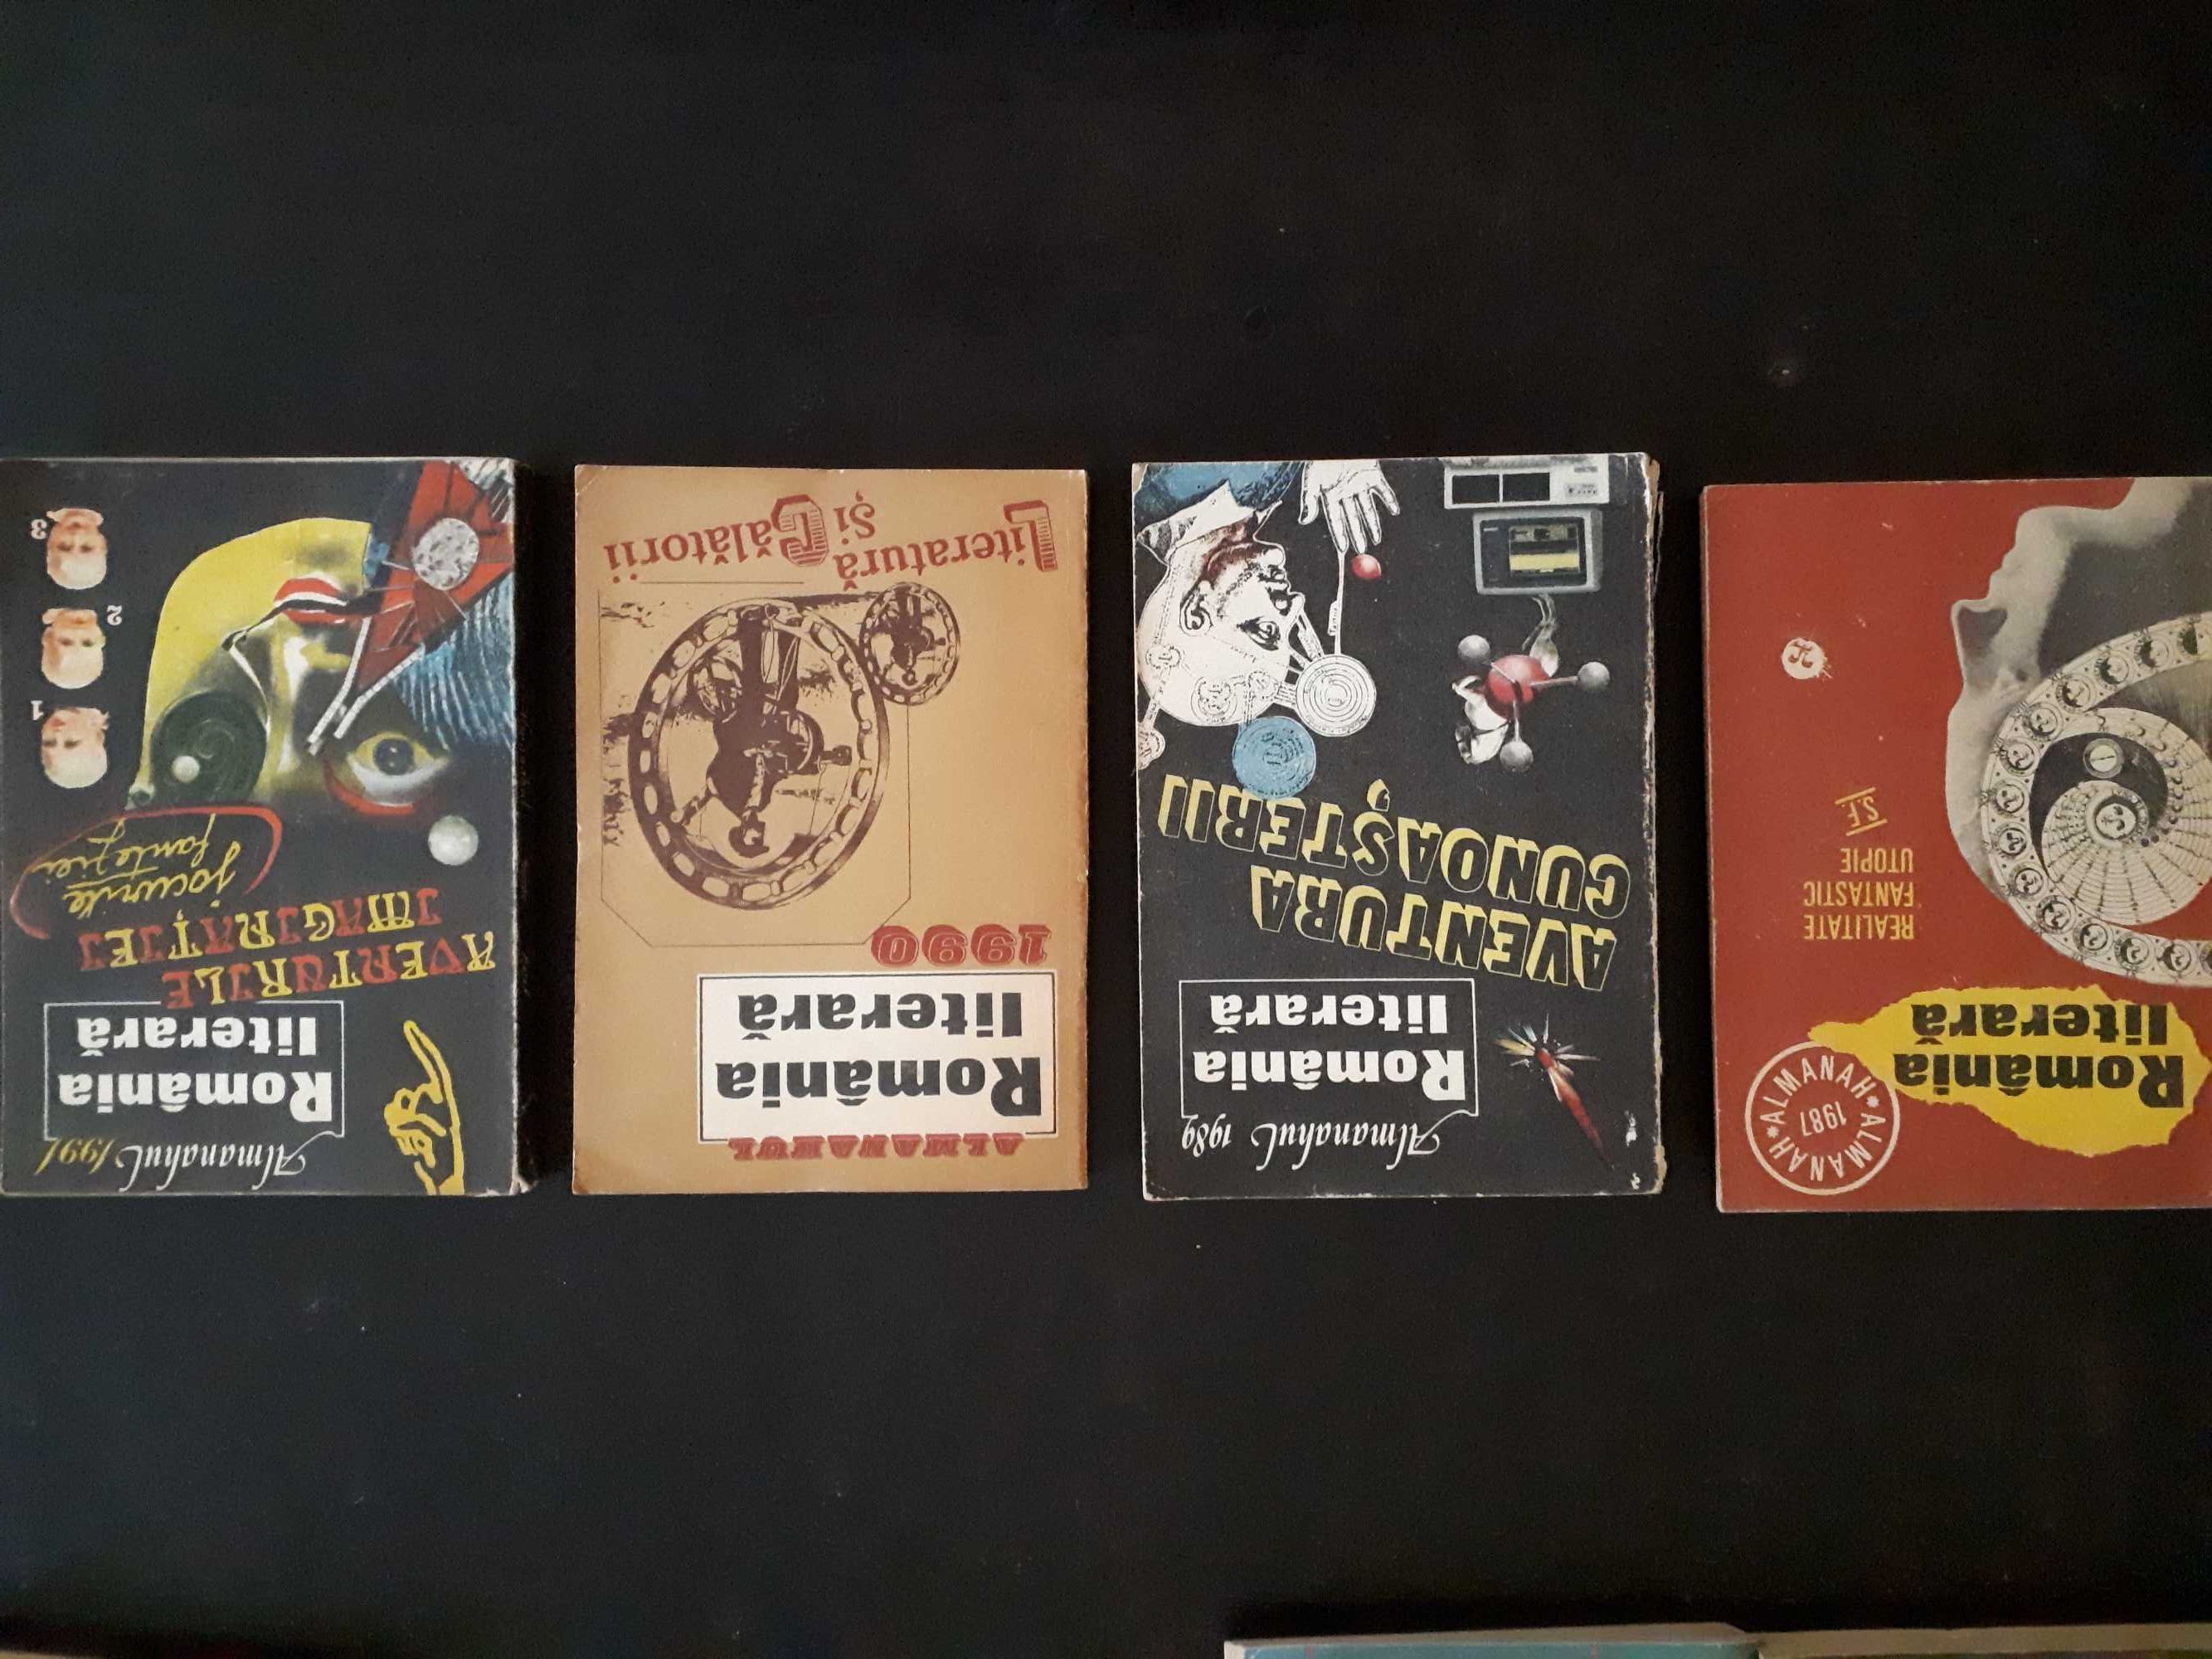 Almanahuri Flacăra, Magazin, Luceafărul, România literară, Ateneu